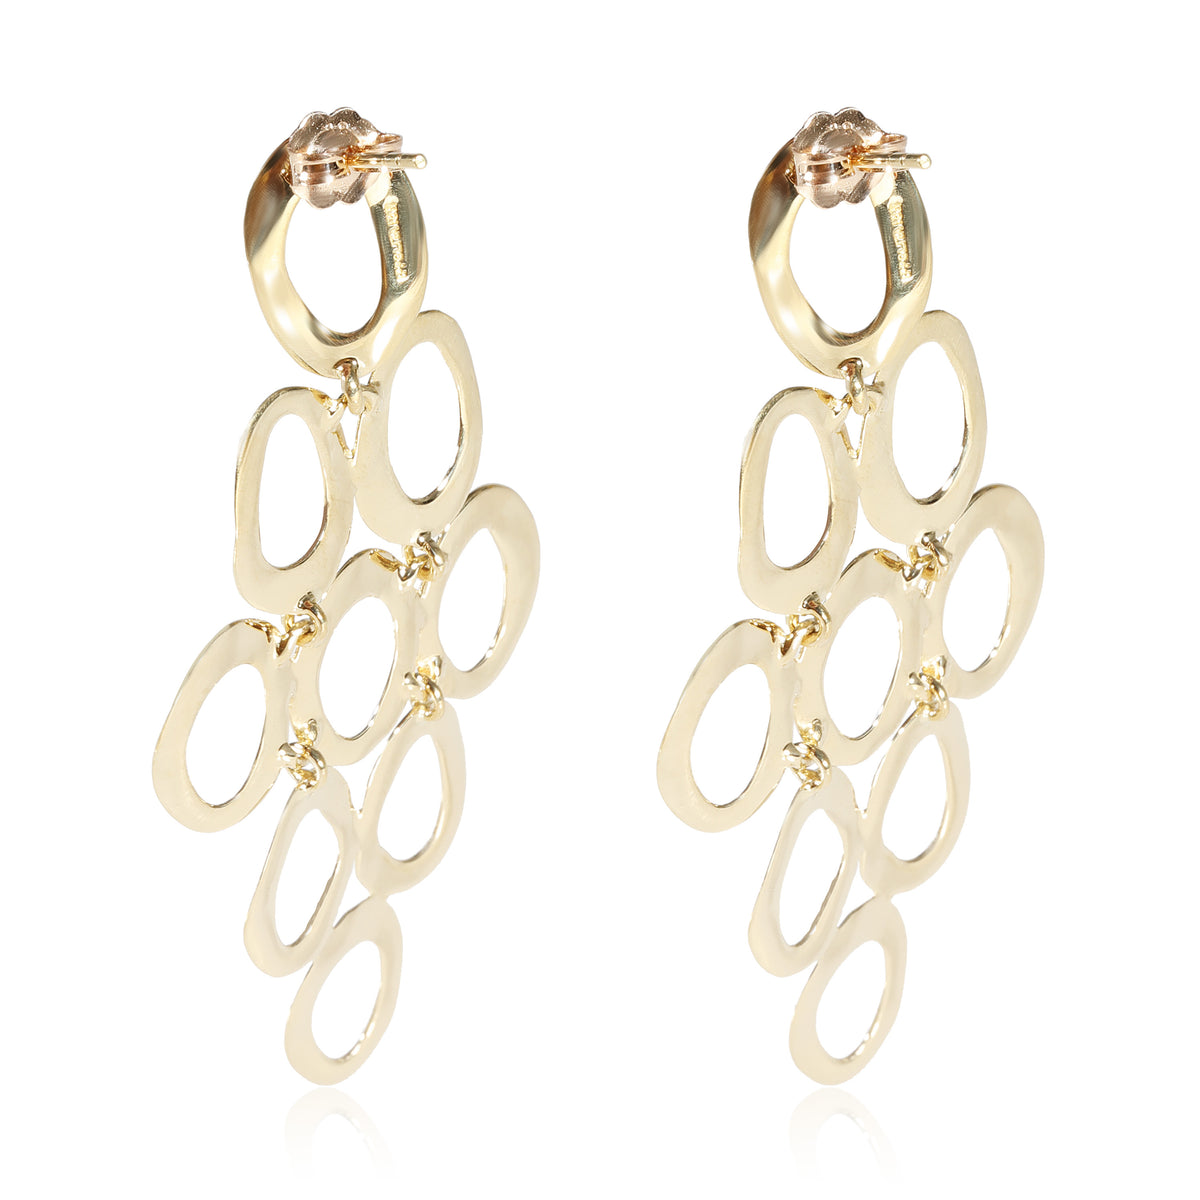 Ippolita Cascade Earrings in 18k Yellow Gold